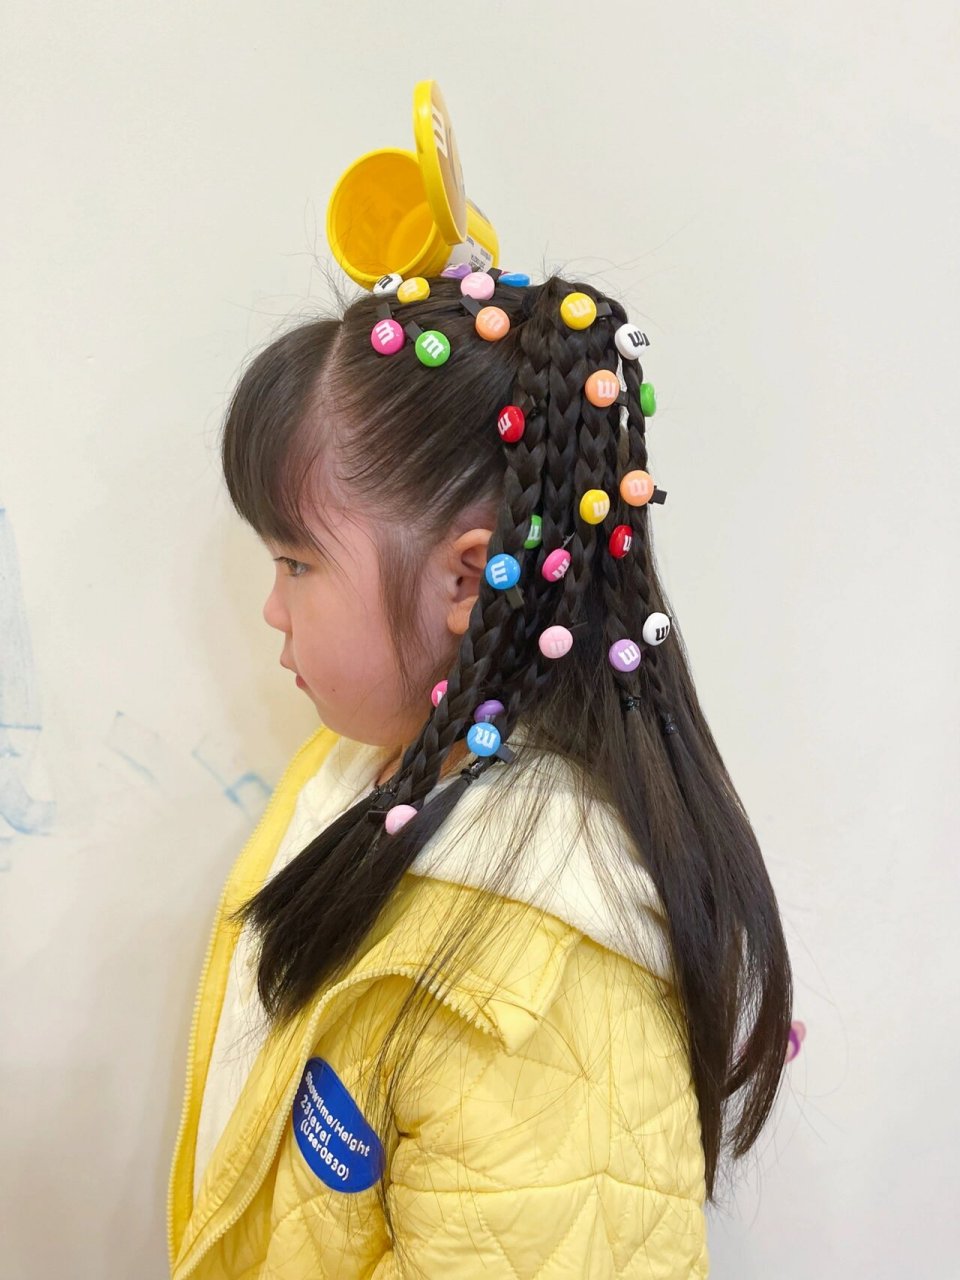 幼儿园宝贝 俏皮可爱的舞台发型 疯狂头发日 造型名叫:打翻了的mm豆